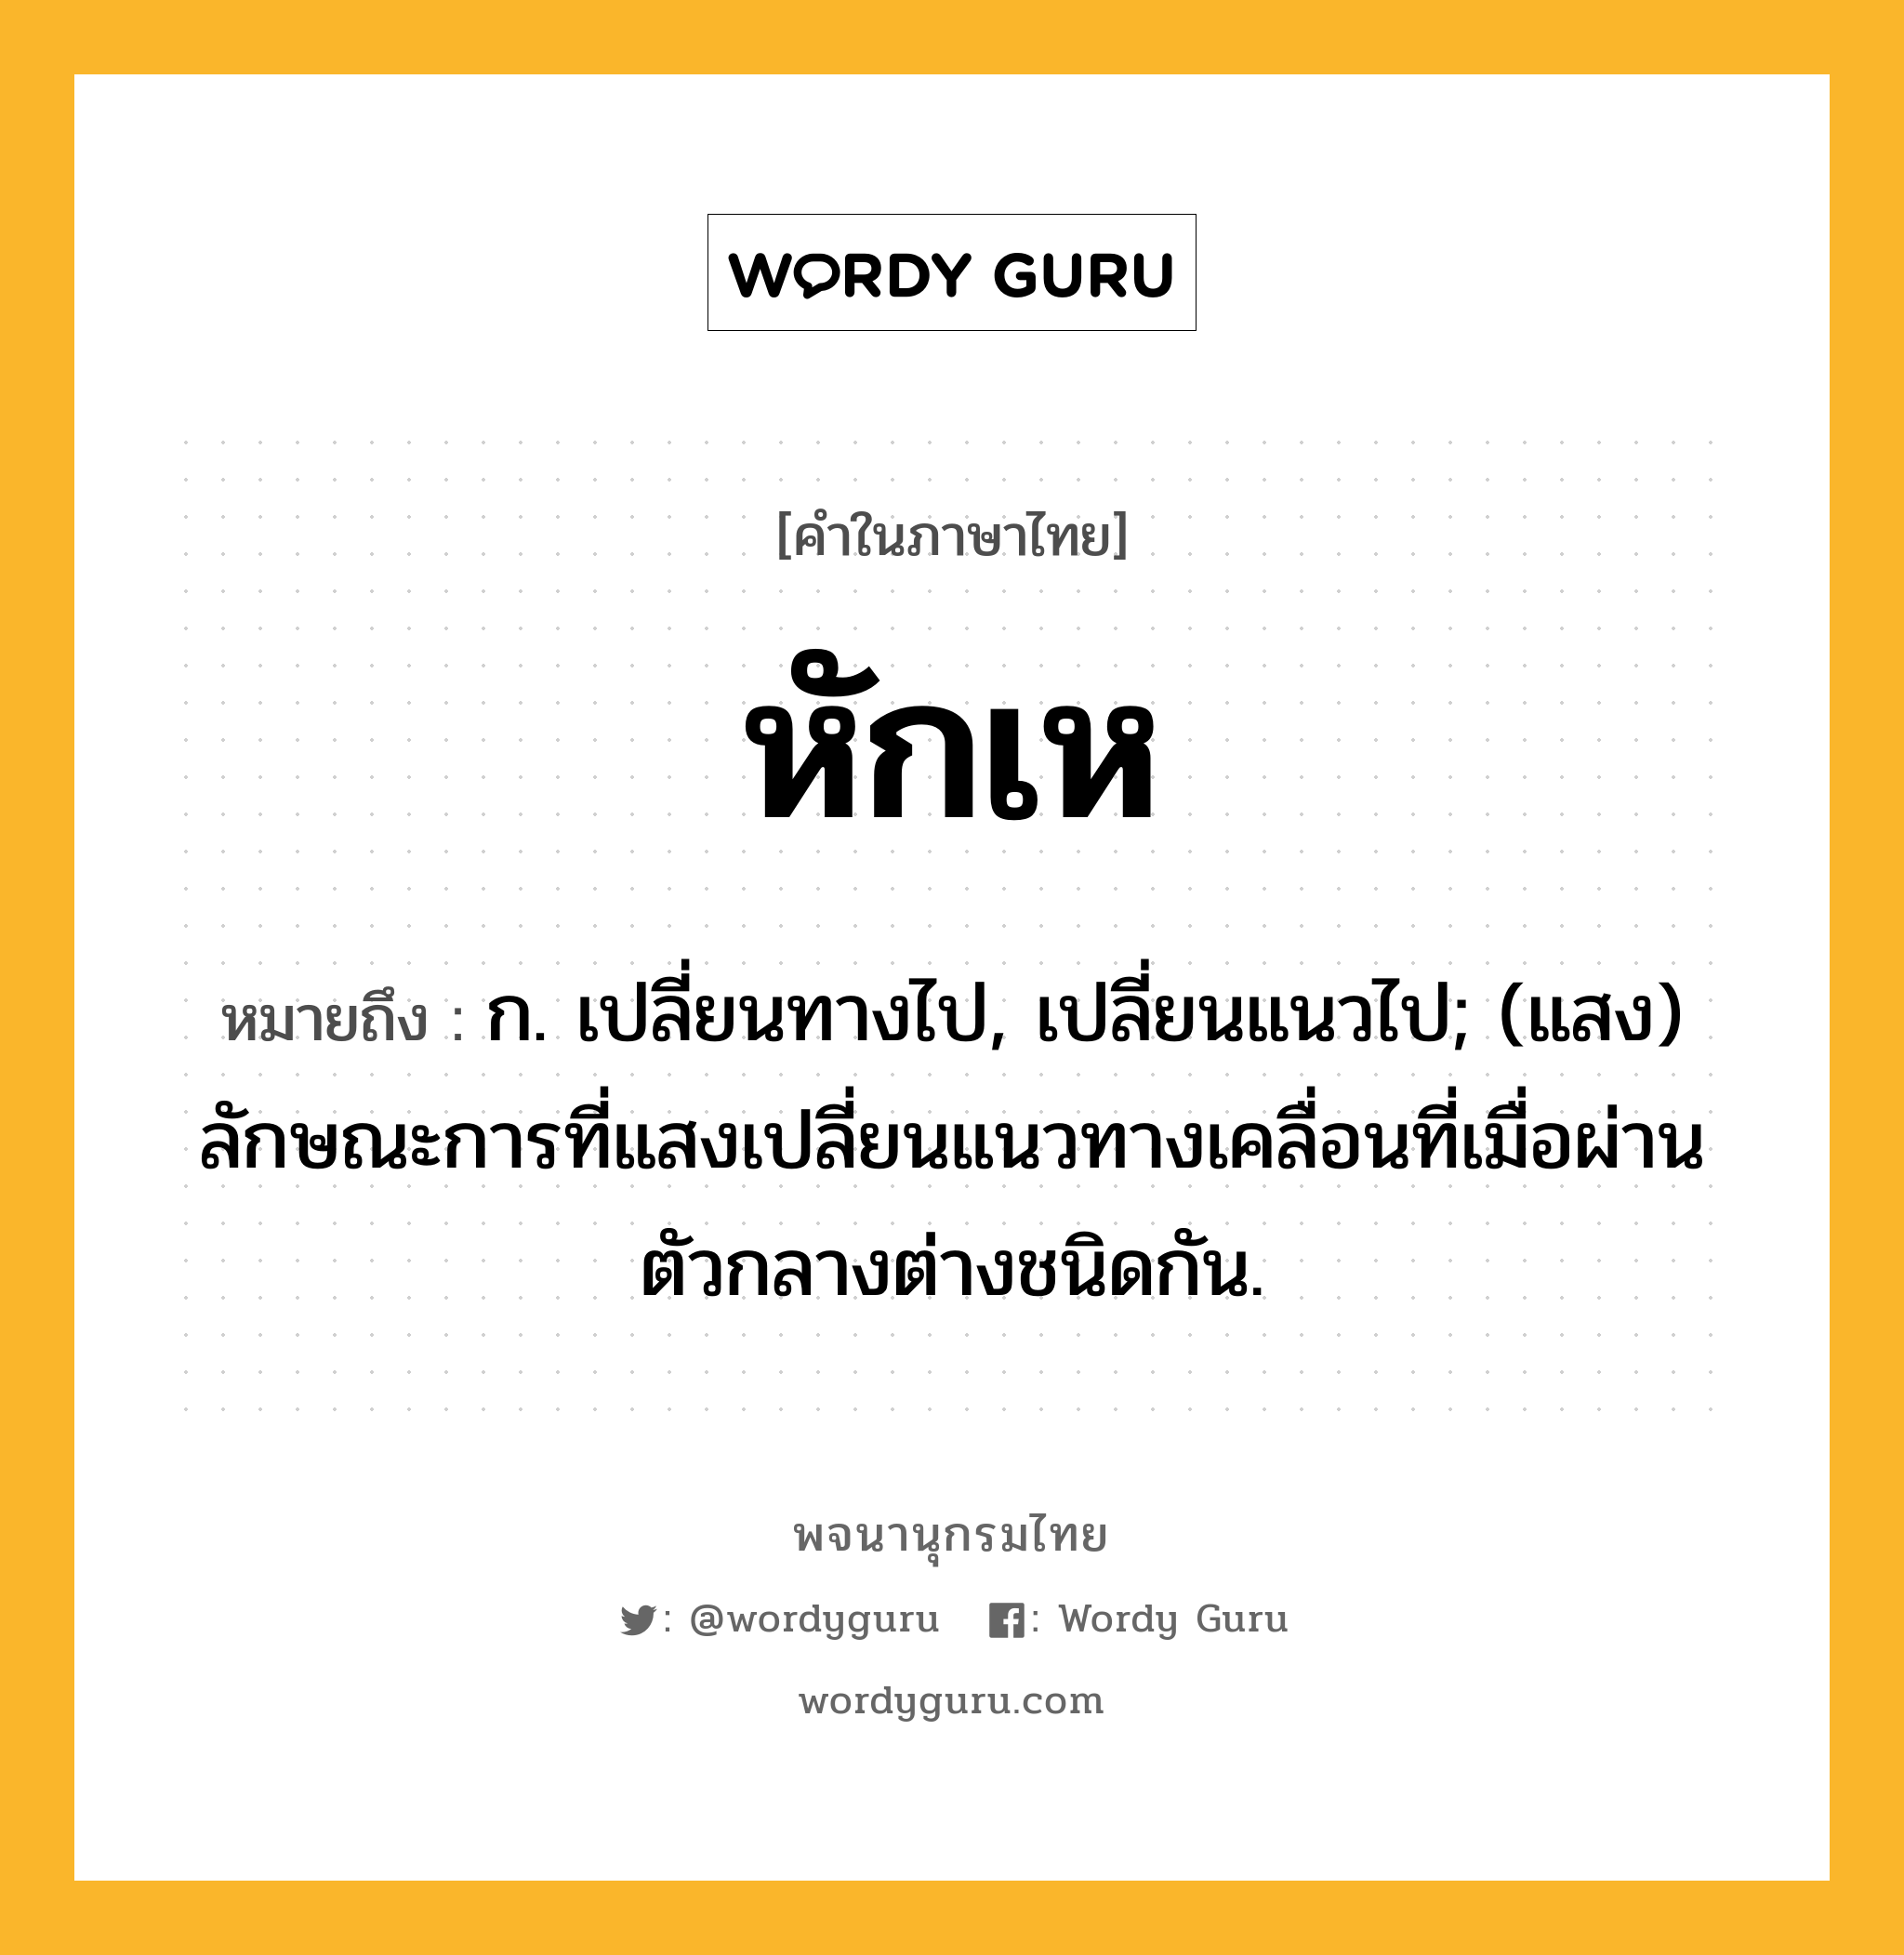 หักเห ความหมาย หมายถึงอะไร?, คำในภาษาไทย หักเห หมายถึง ก. เปลี่ยนทางไป, เปลี่ยนแนวไป; (แสง) ลักษณะการที่แสงเปลี่ยนแนวทางเคลื่อนที่เมื่อผ่านตัวกลางต่างชนิดกัน.